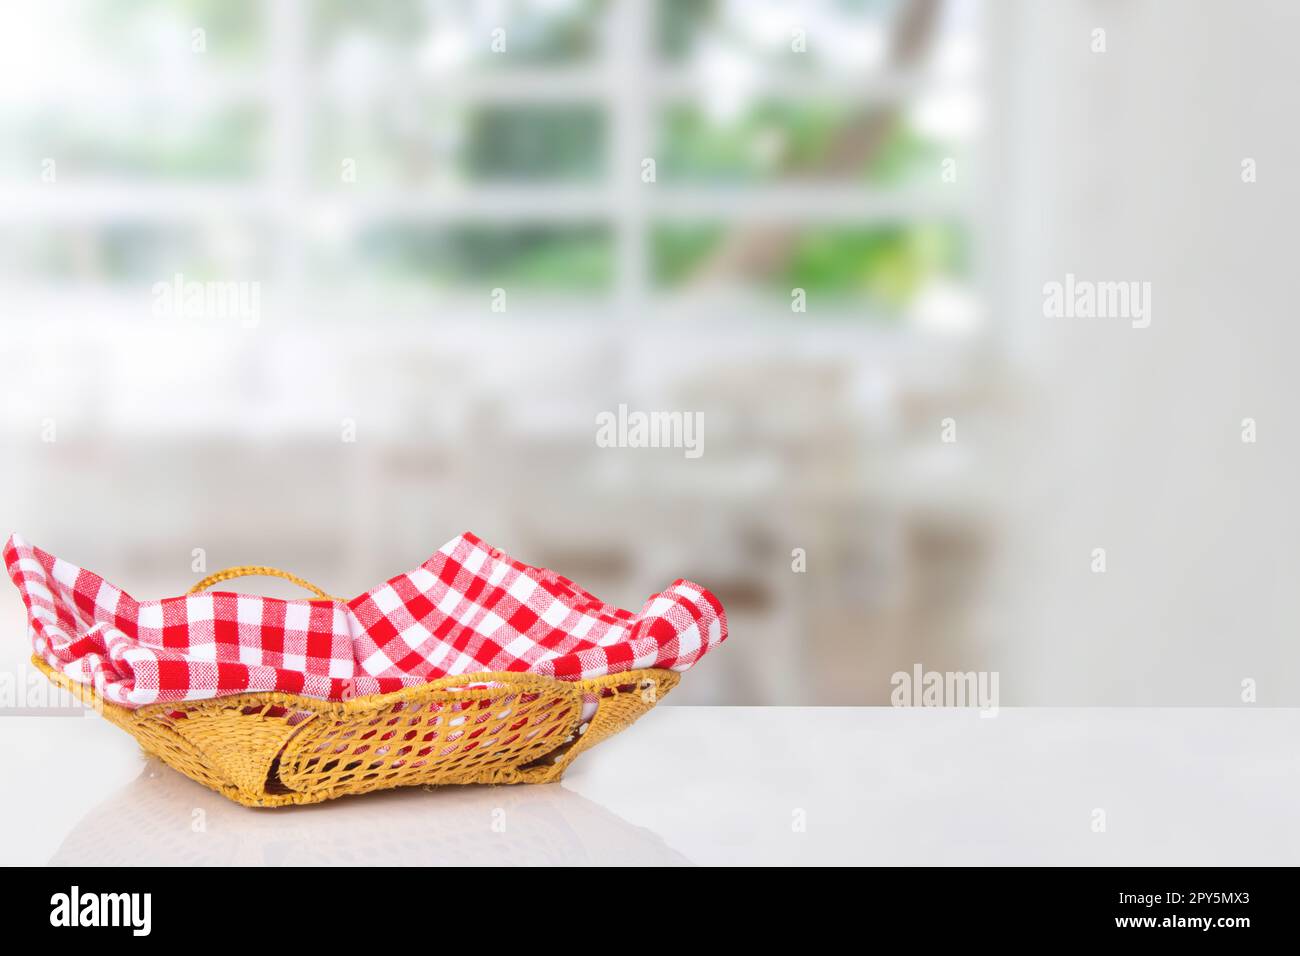 Leerer Picknickkorb. Nahaufnahme eines leeren Strohkorbs mit einer karierten roten Serviette auf dem Tisch über verschwommenem Küchenhintergrund. Für die Montage Ihrer Lebensmittel- und Produktpräsentation. Stockfoto